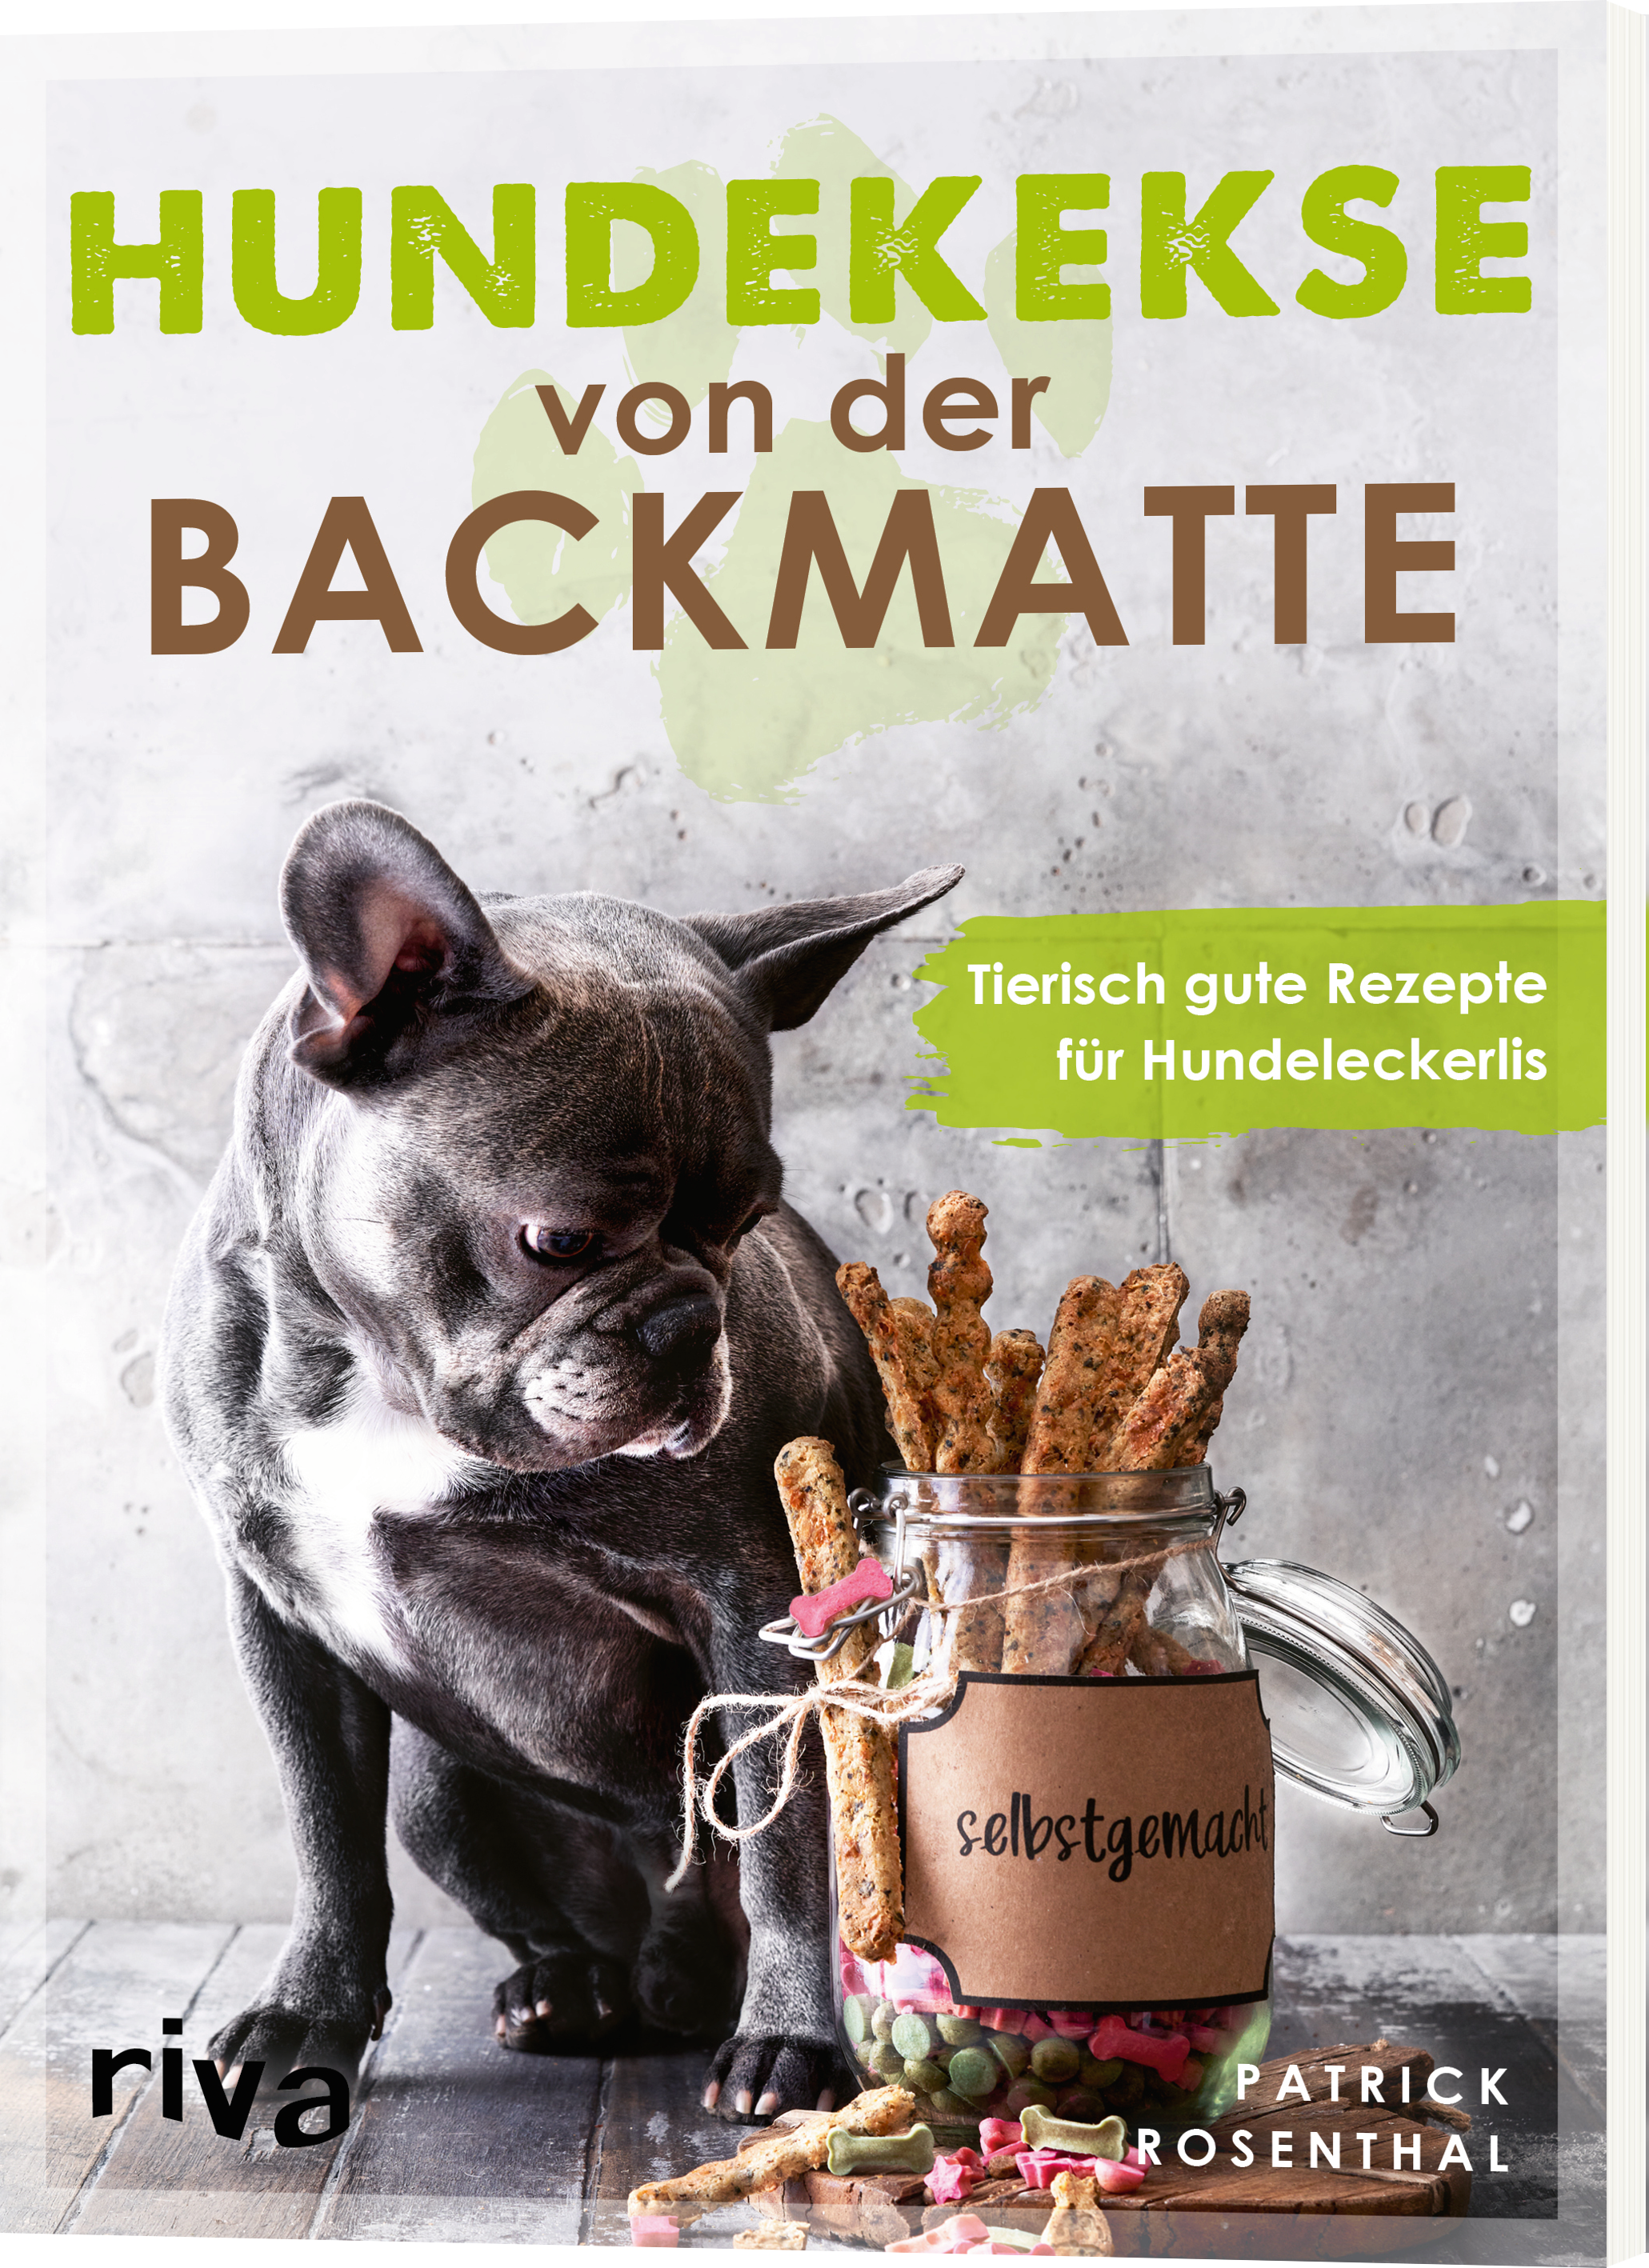 Die besten Hundekekse und Leckerlies für Ihren Hund ganz einfach selber machen gesund & natürlich Backmatten Rezepte 